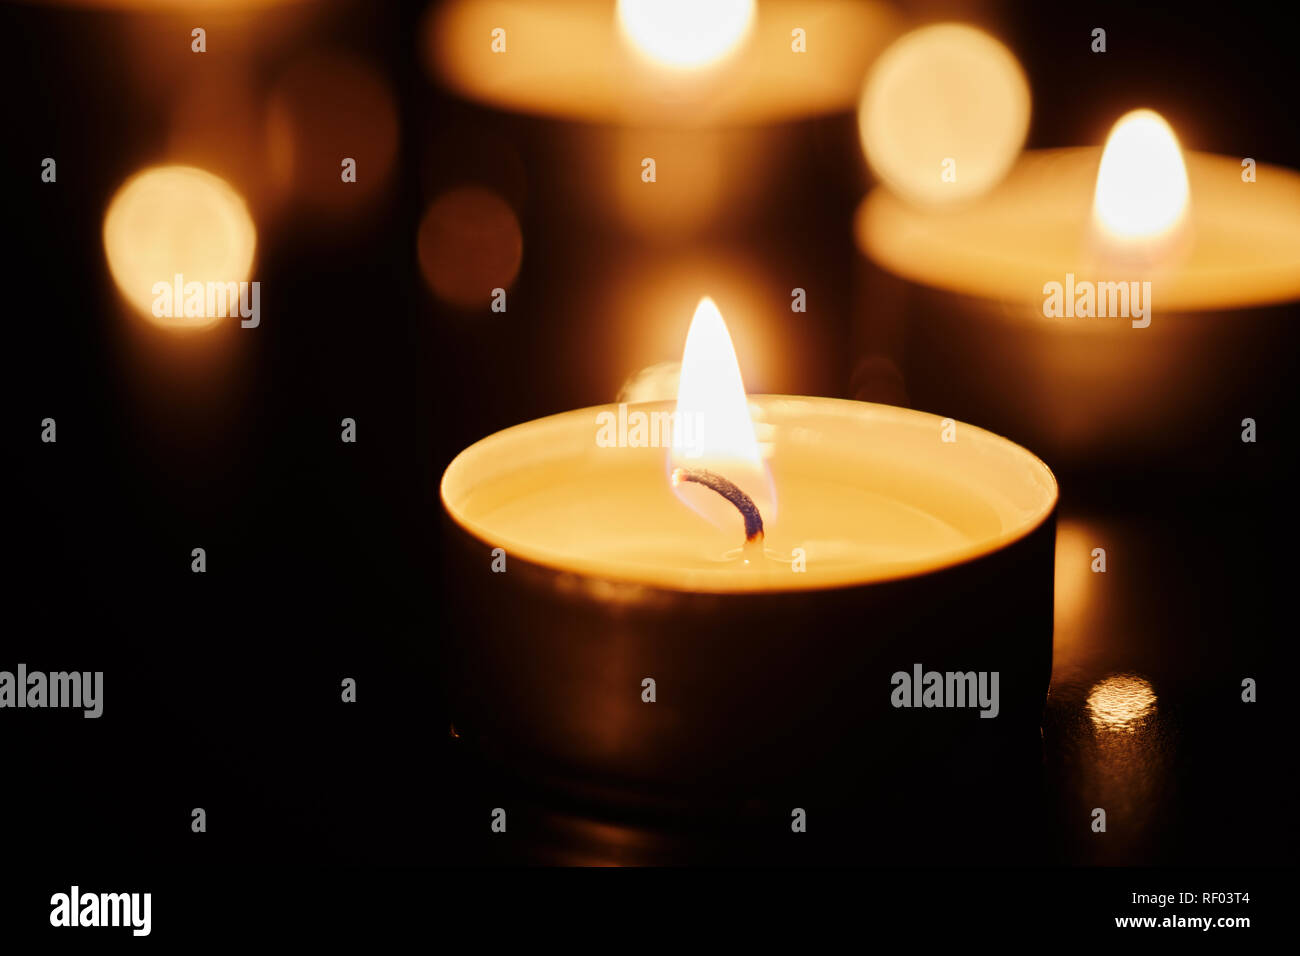 Concetto spirituale delle tealight illuminato candele in vista ravvicinata Foto Stock